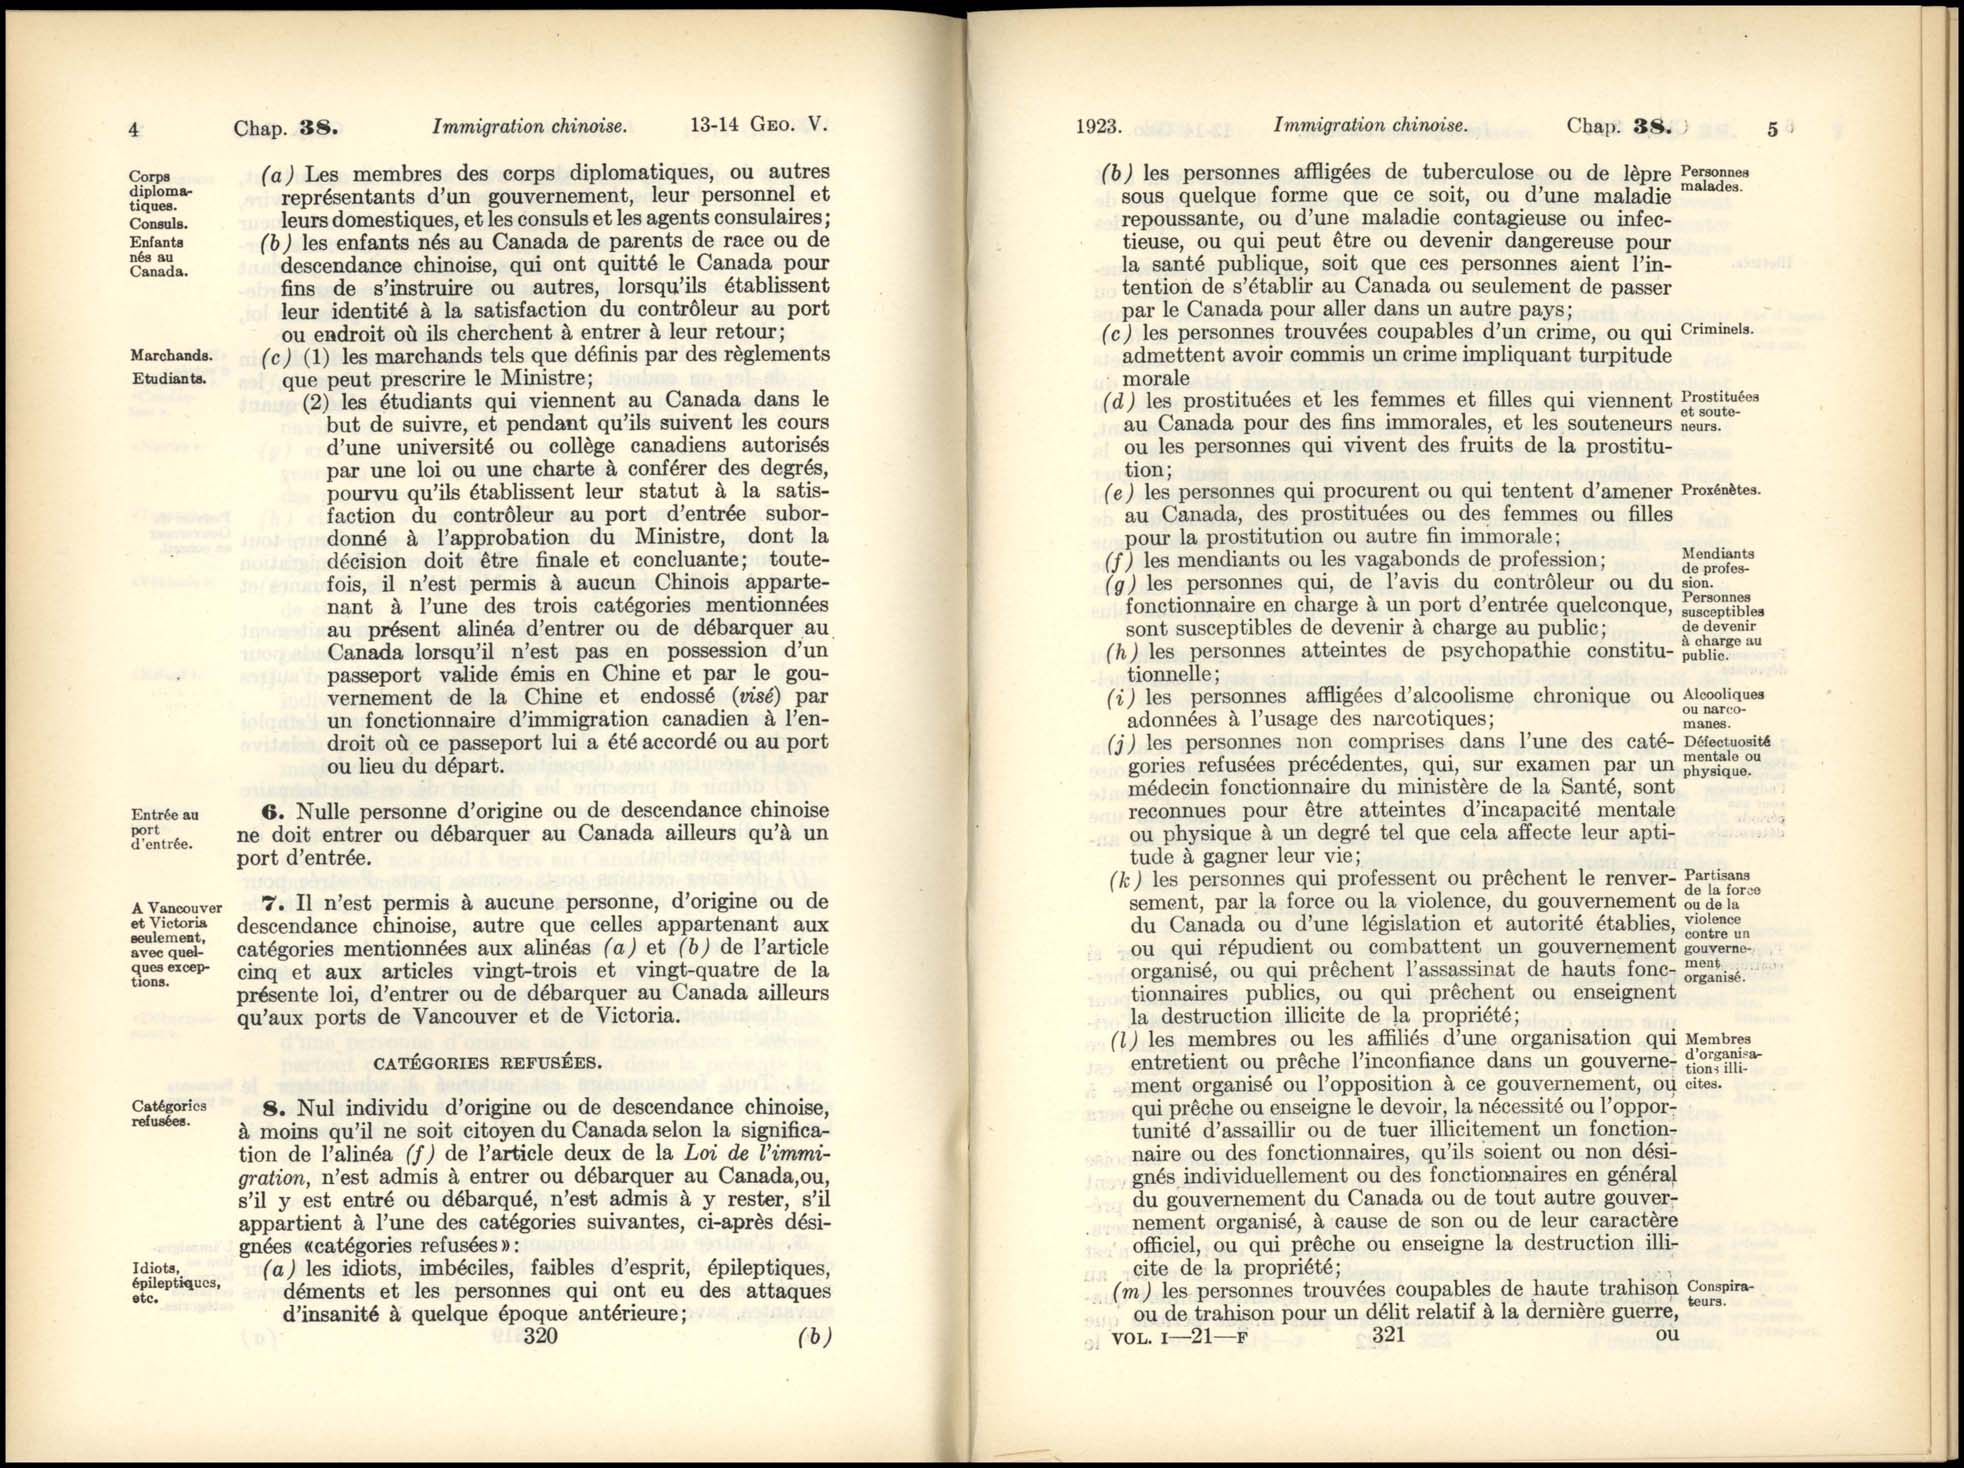 Page 320, 321 Loi de l’Immigration Chinoise, 1923